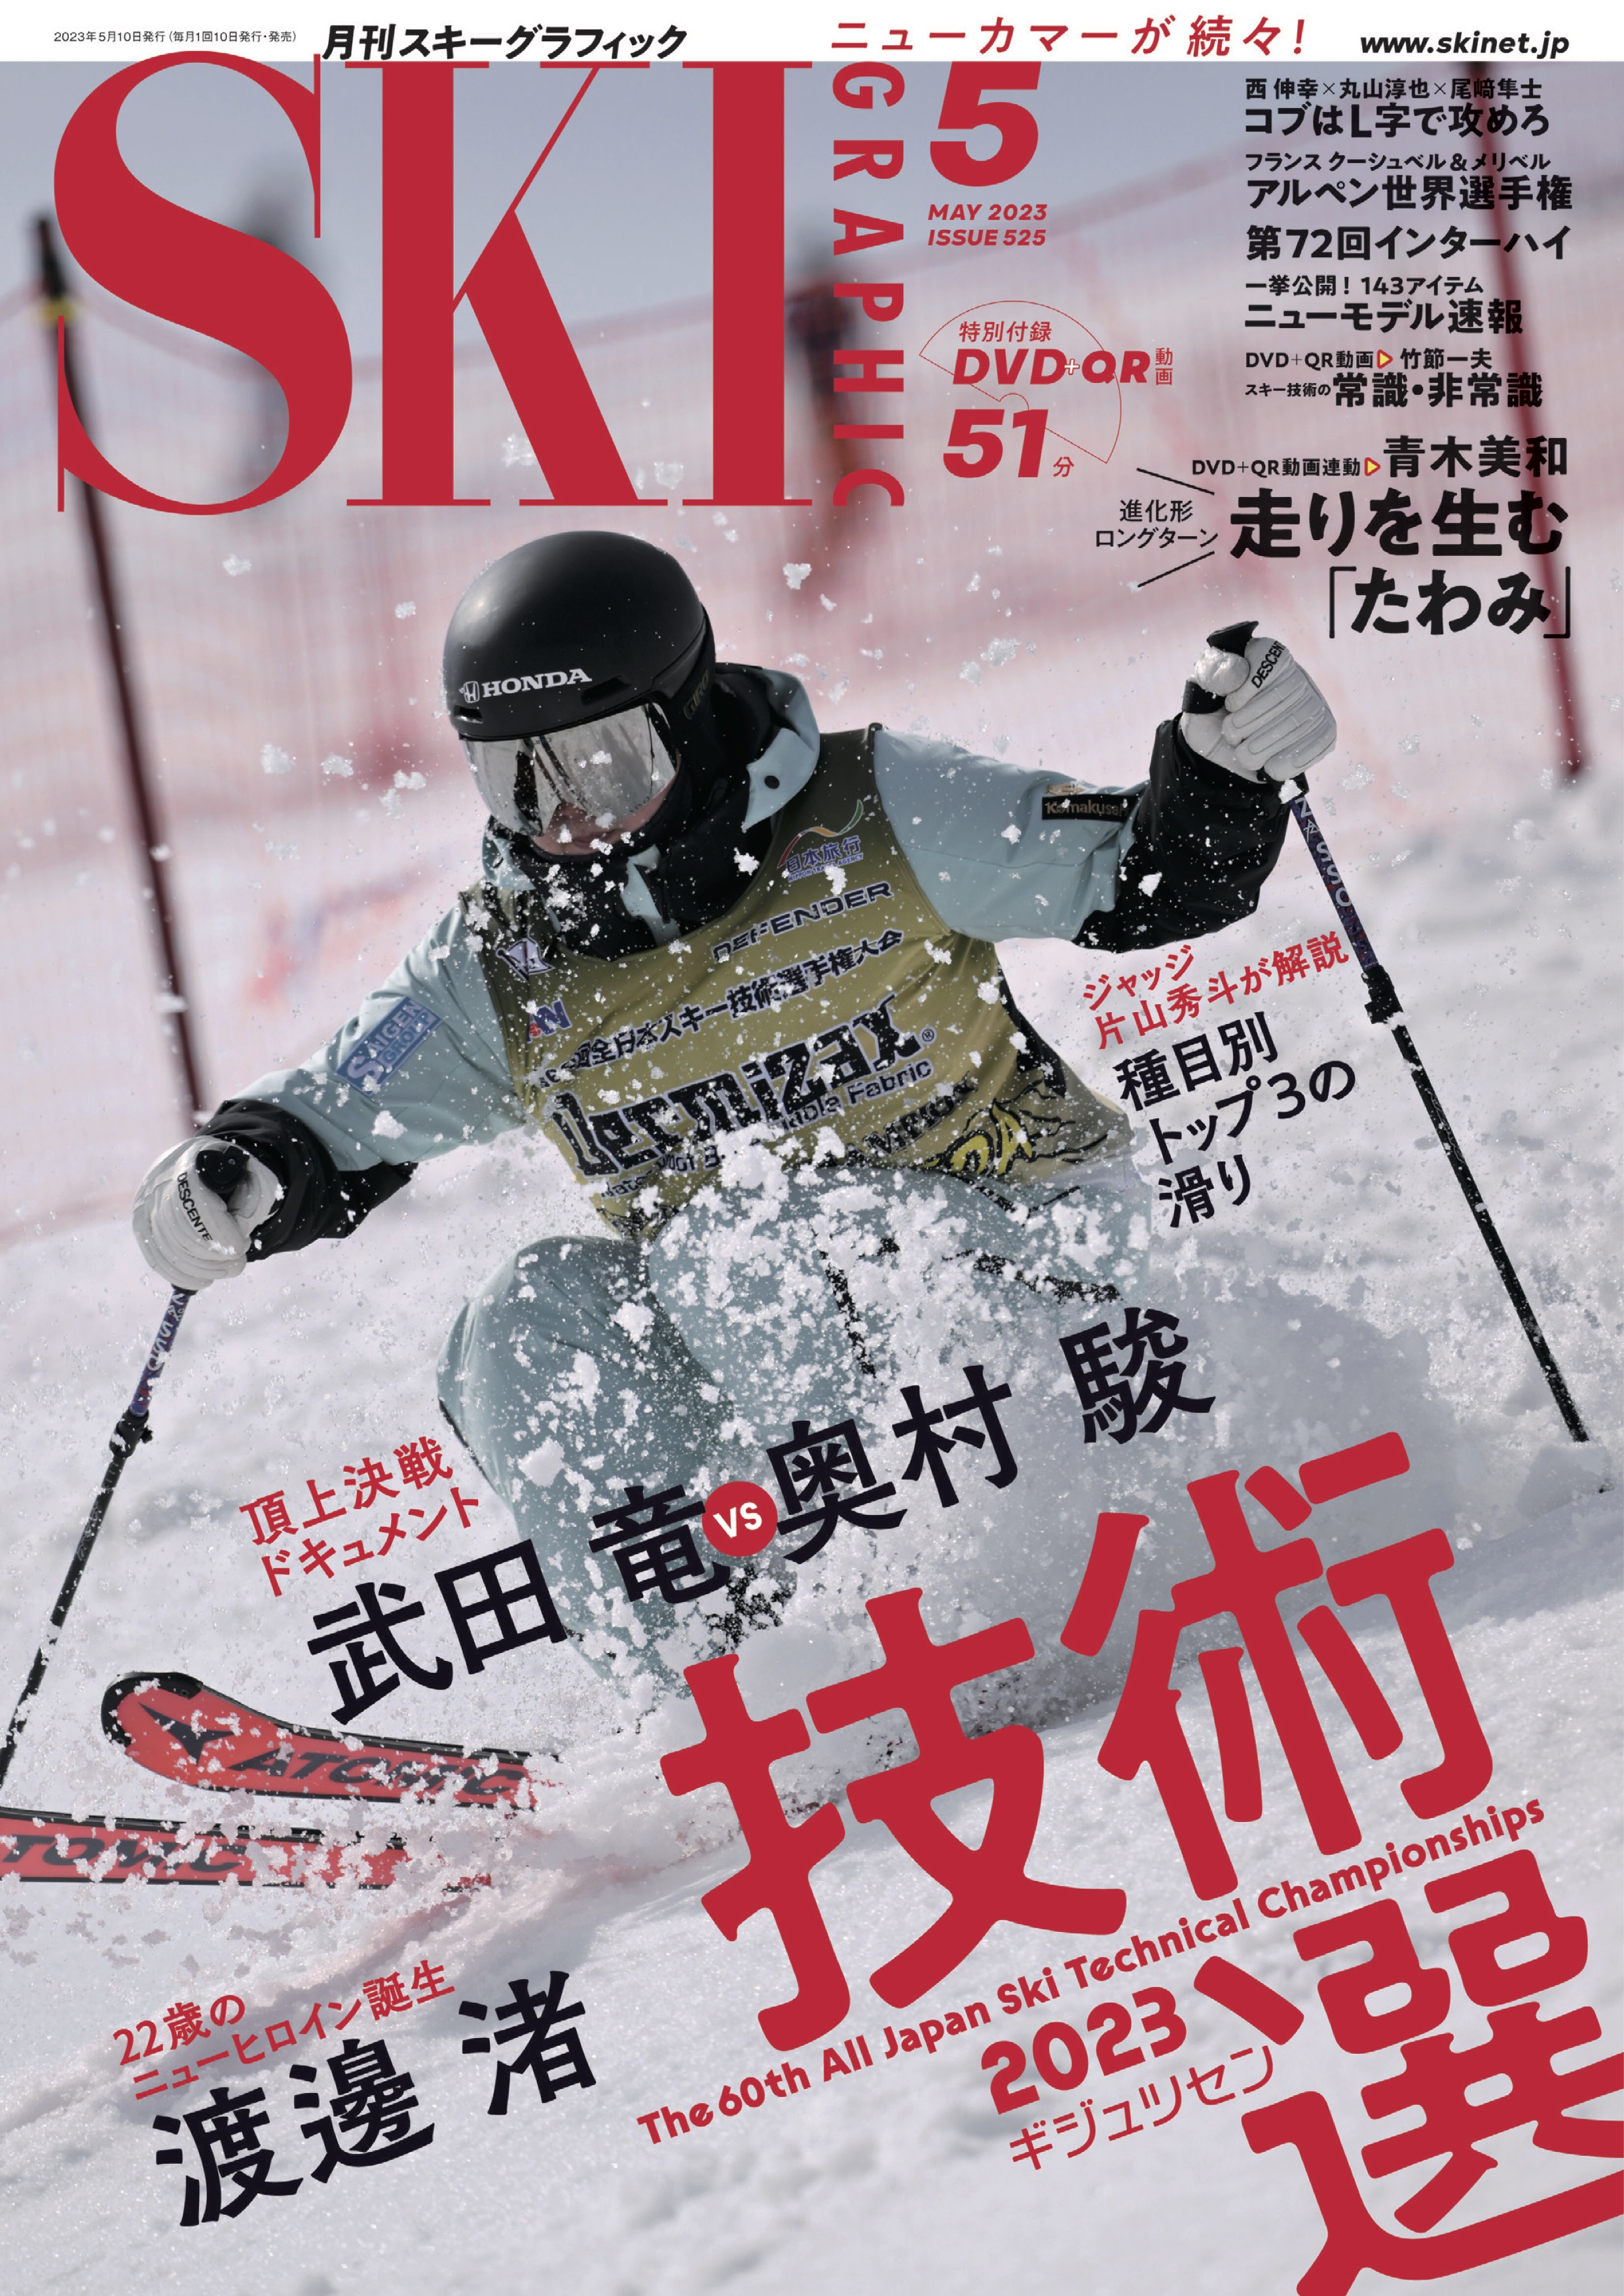 スキーグラフィックNo.525 - スキーグラフィック編集部 - 漫画・ラノベ